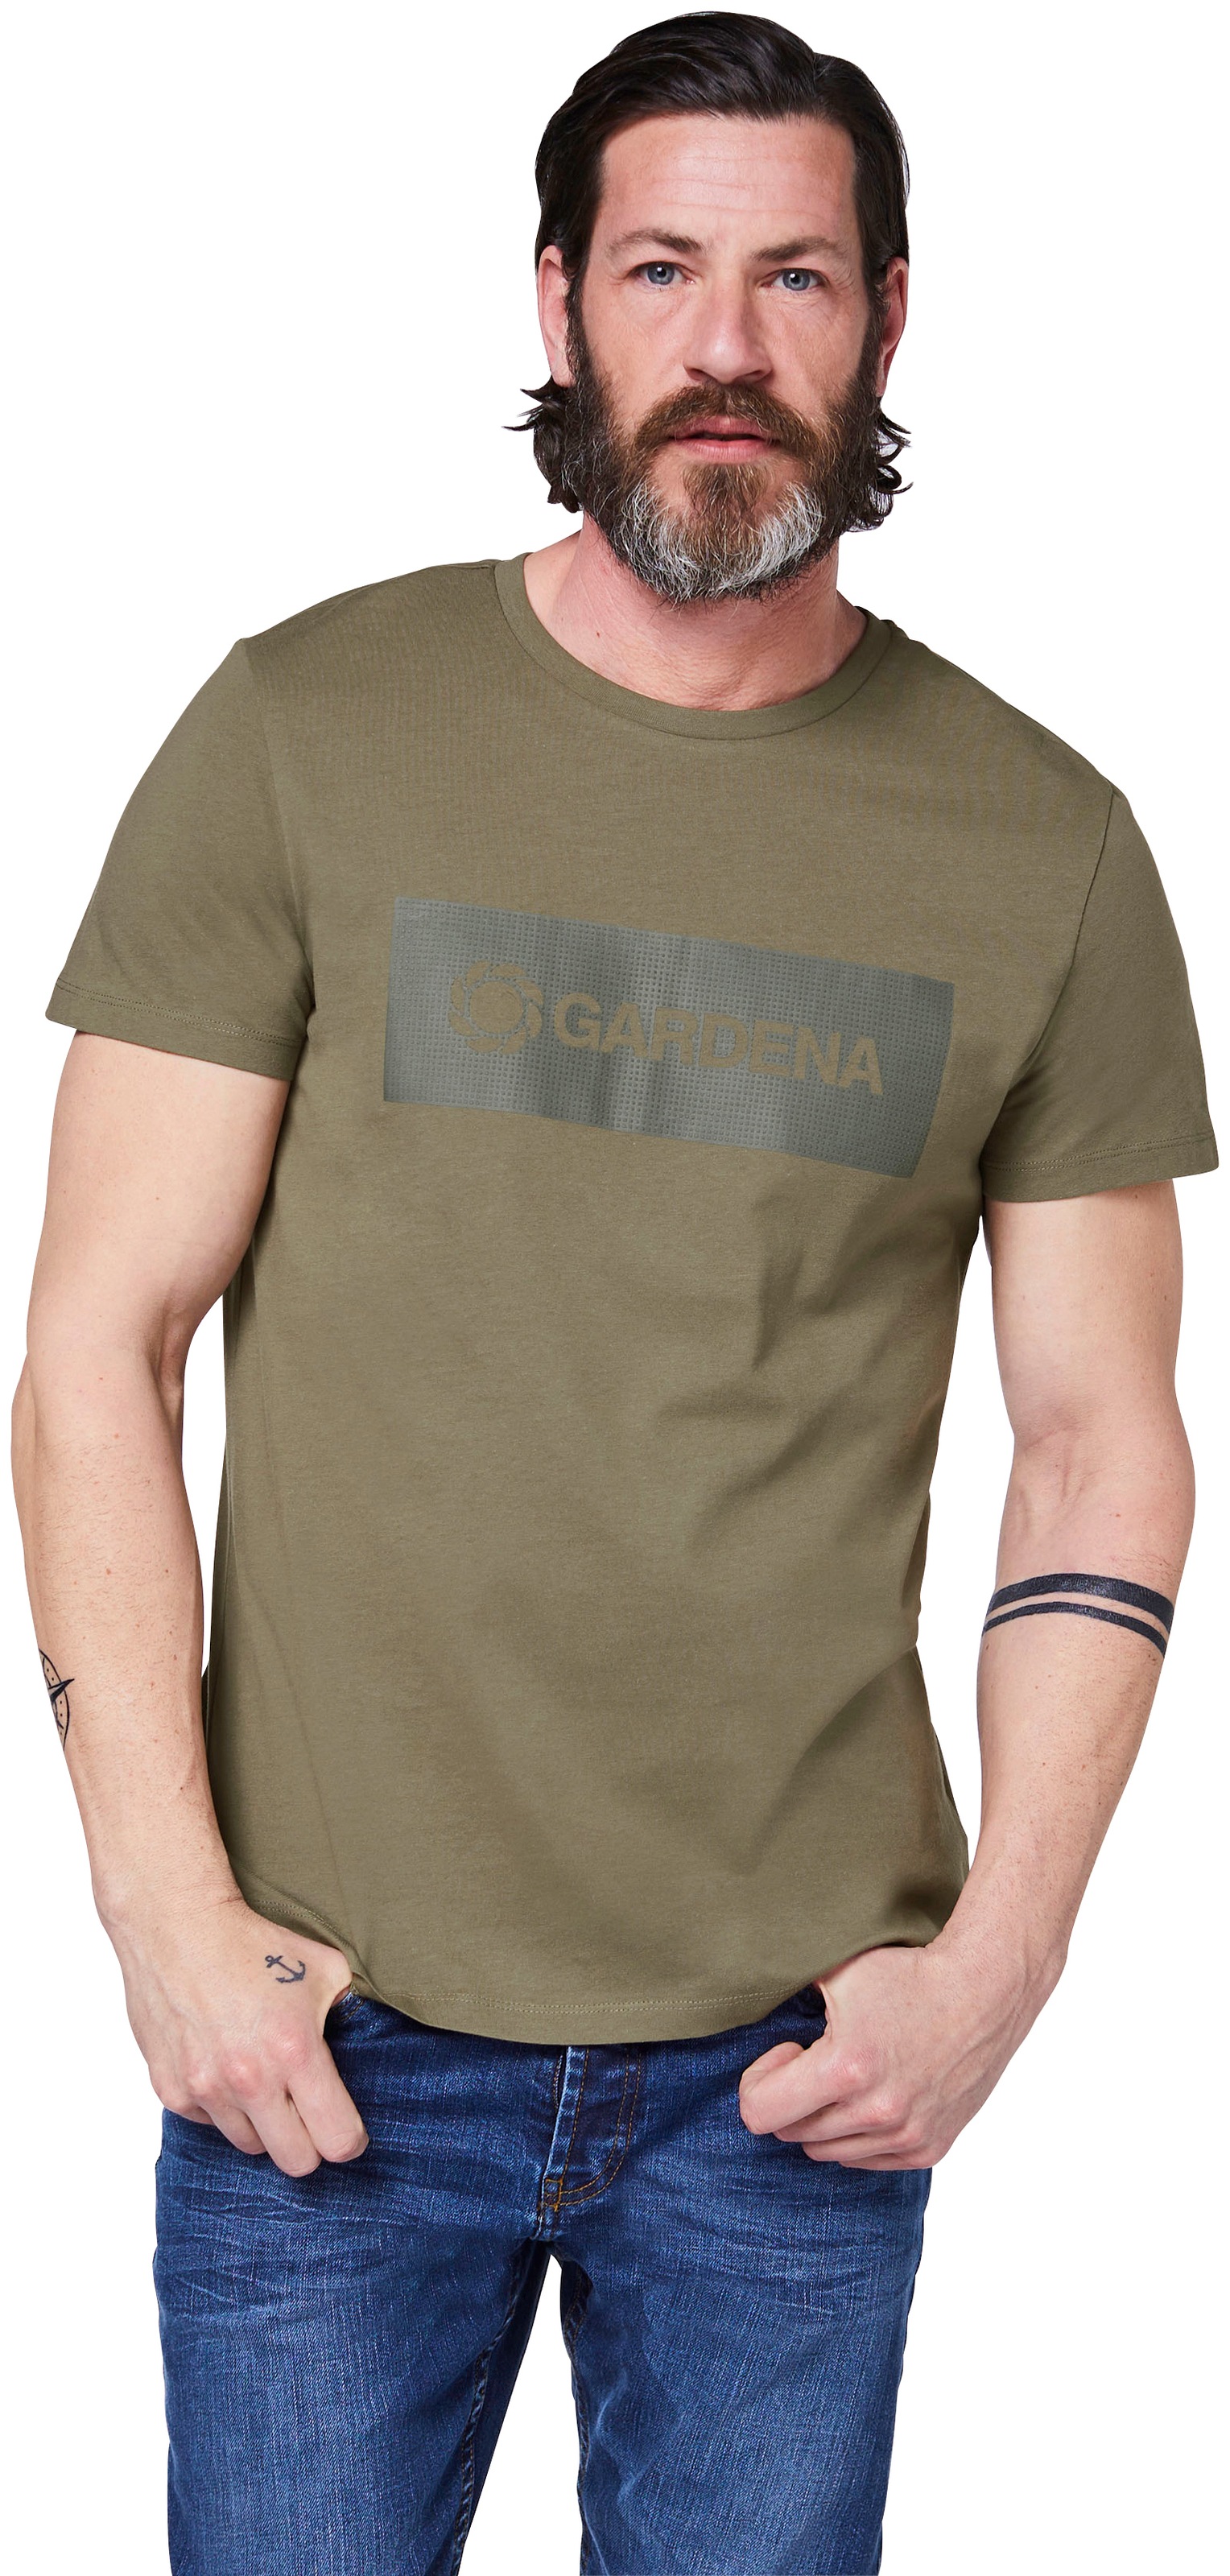 GARDENA T-Shirt »Dusty Olive«, mit Gardena-Logodruck ▷ kaufen | BAUR